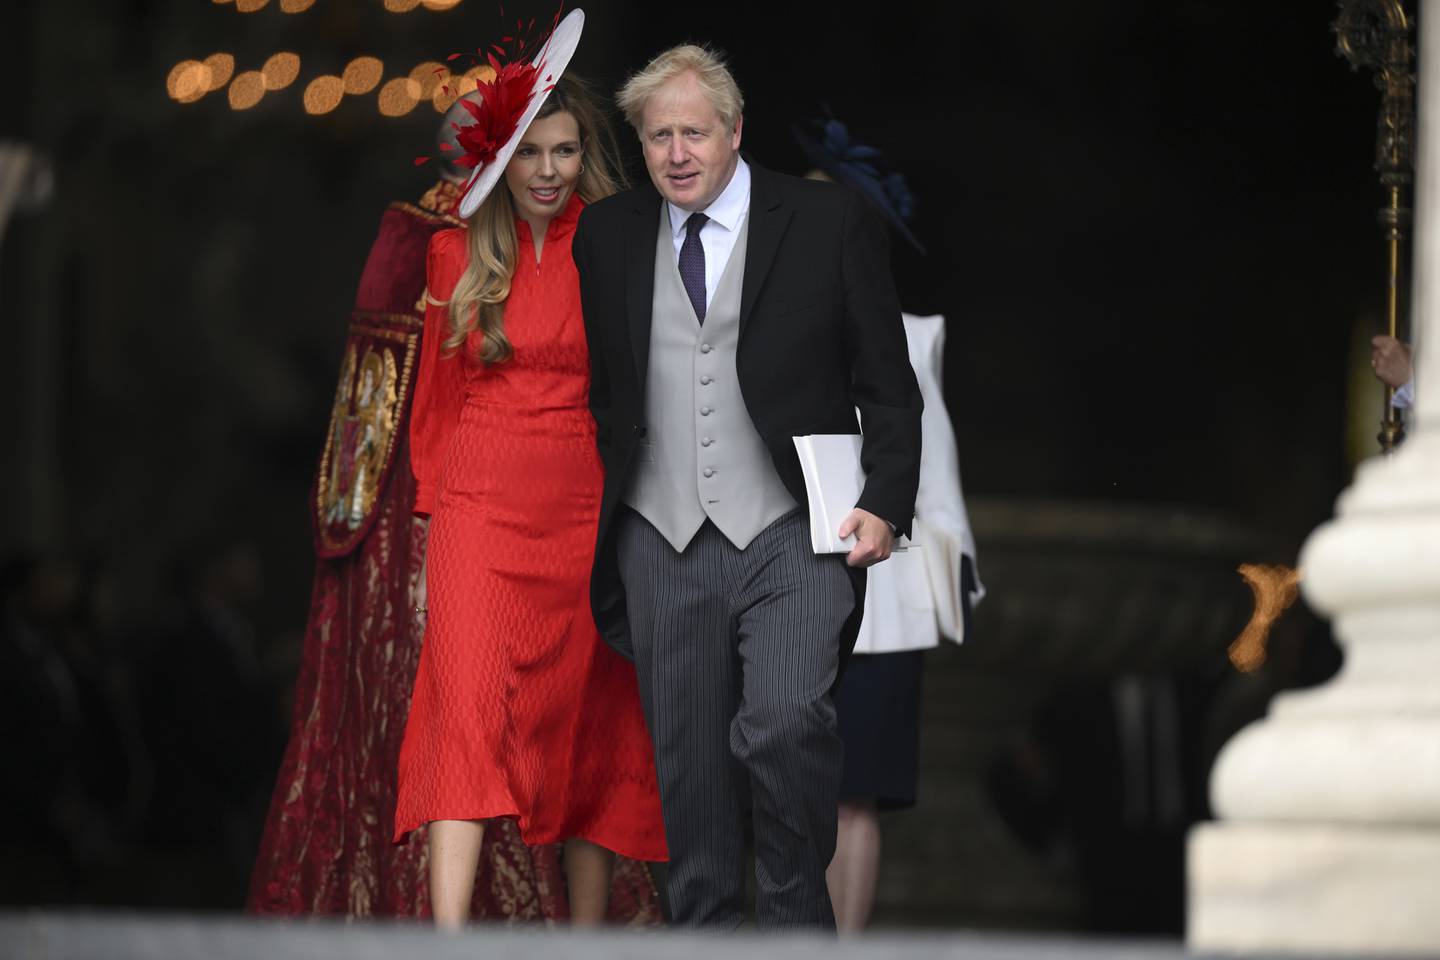 Storbritannias statsminister Boris Johnson og kona Carrie Johnson på vei ut fra gudstjenesten for dronning Elizabeth. Da de ankom, ble de møtt av buing. Foto: Daniel Leal, Pool Photo via AP / NTB